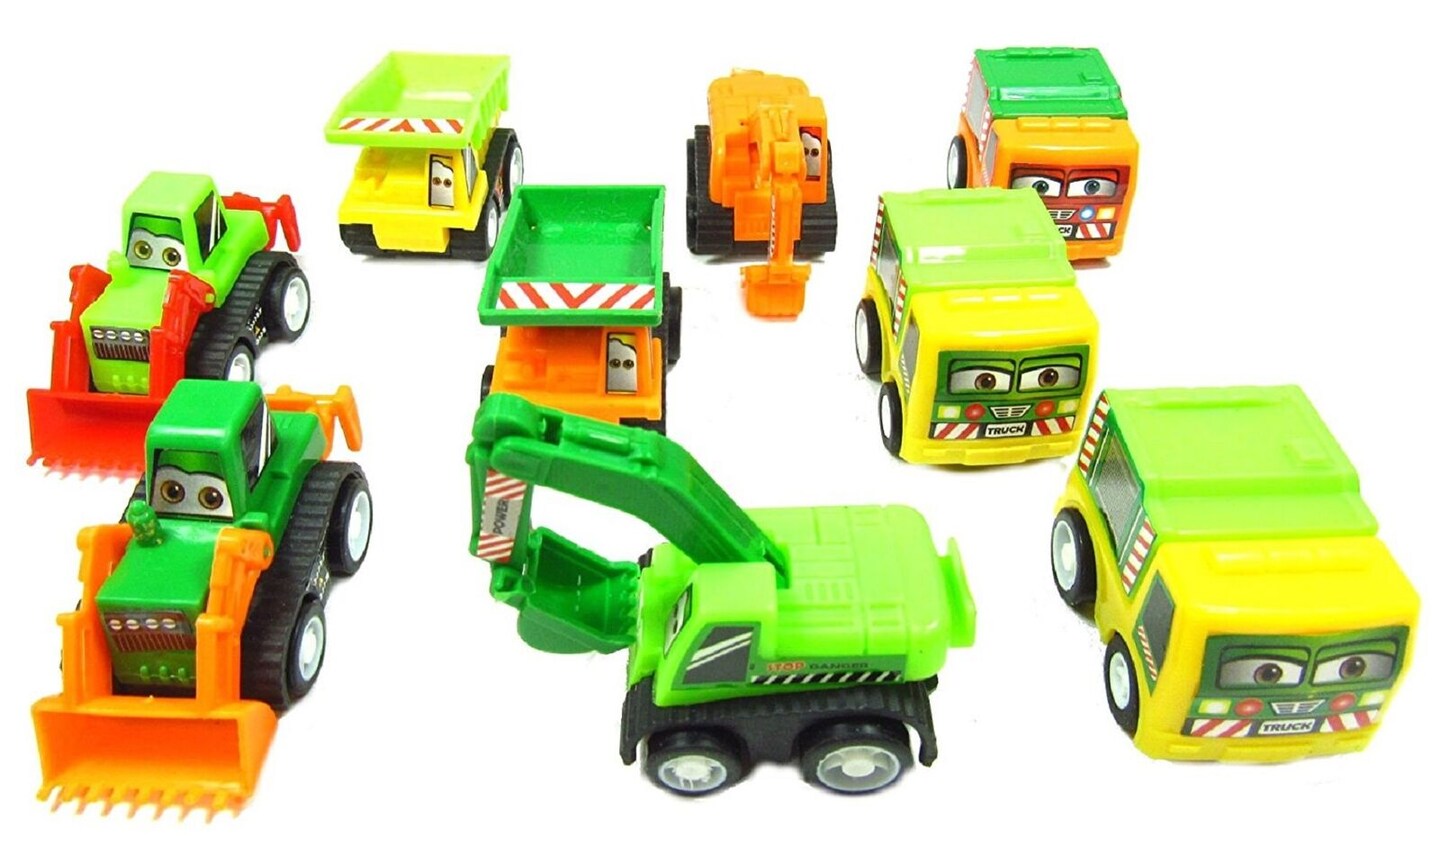 Kitcheniva Set of 9 Assorted Toy Construction Vehicle Play Set